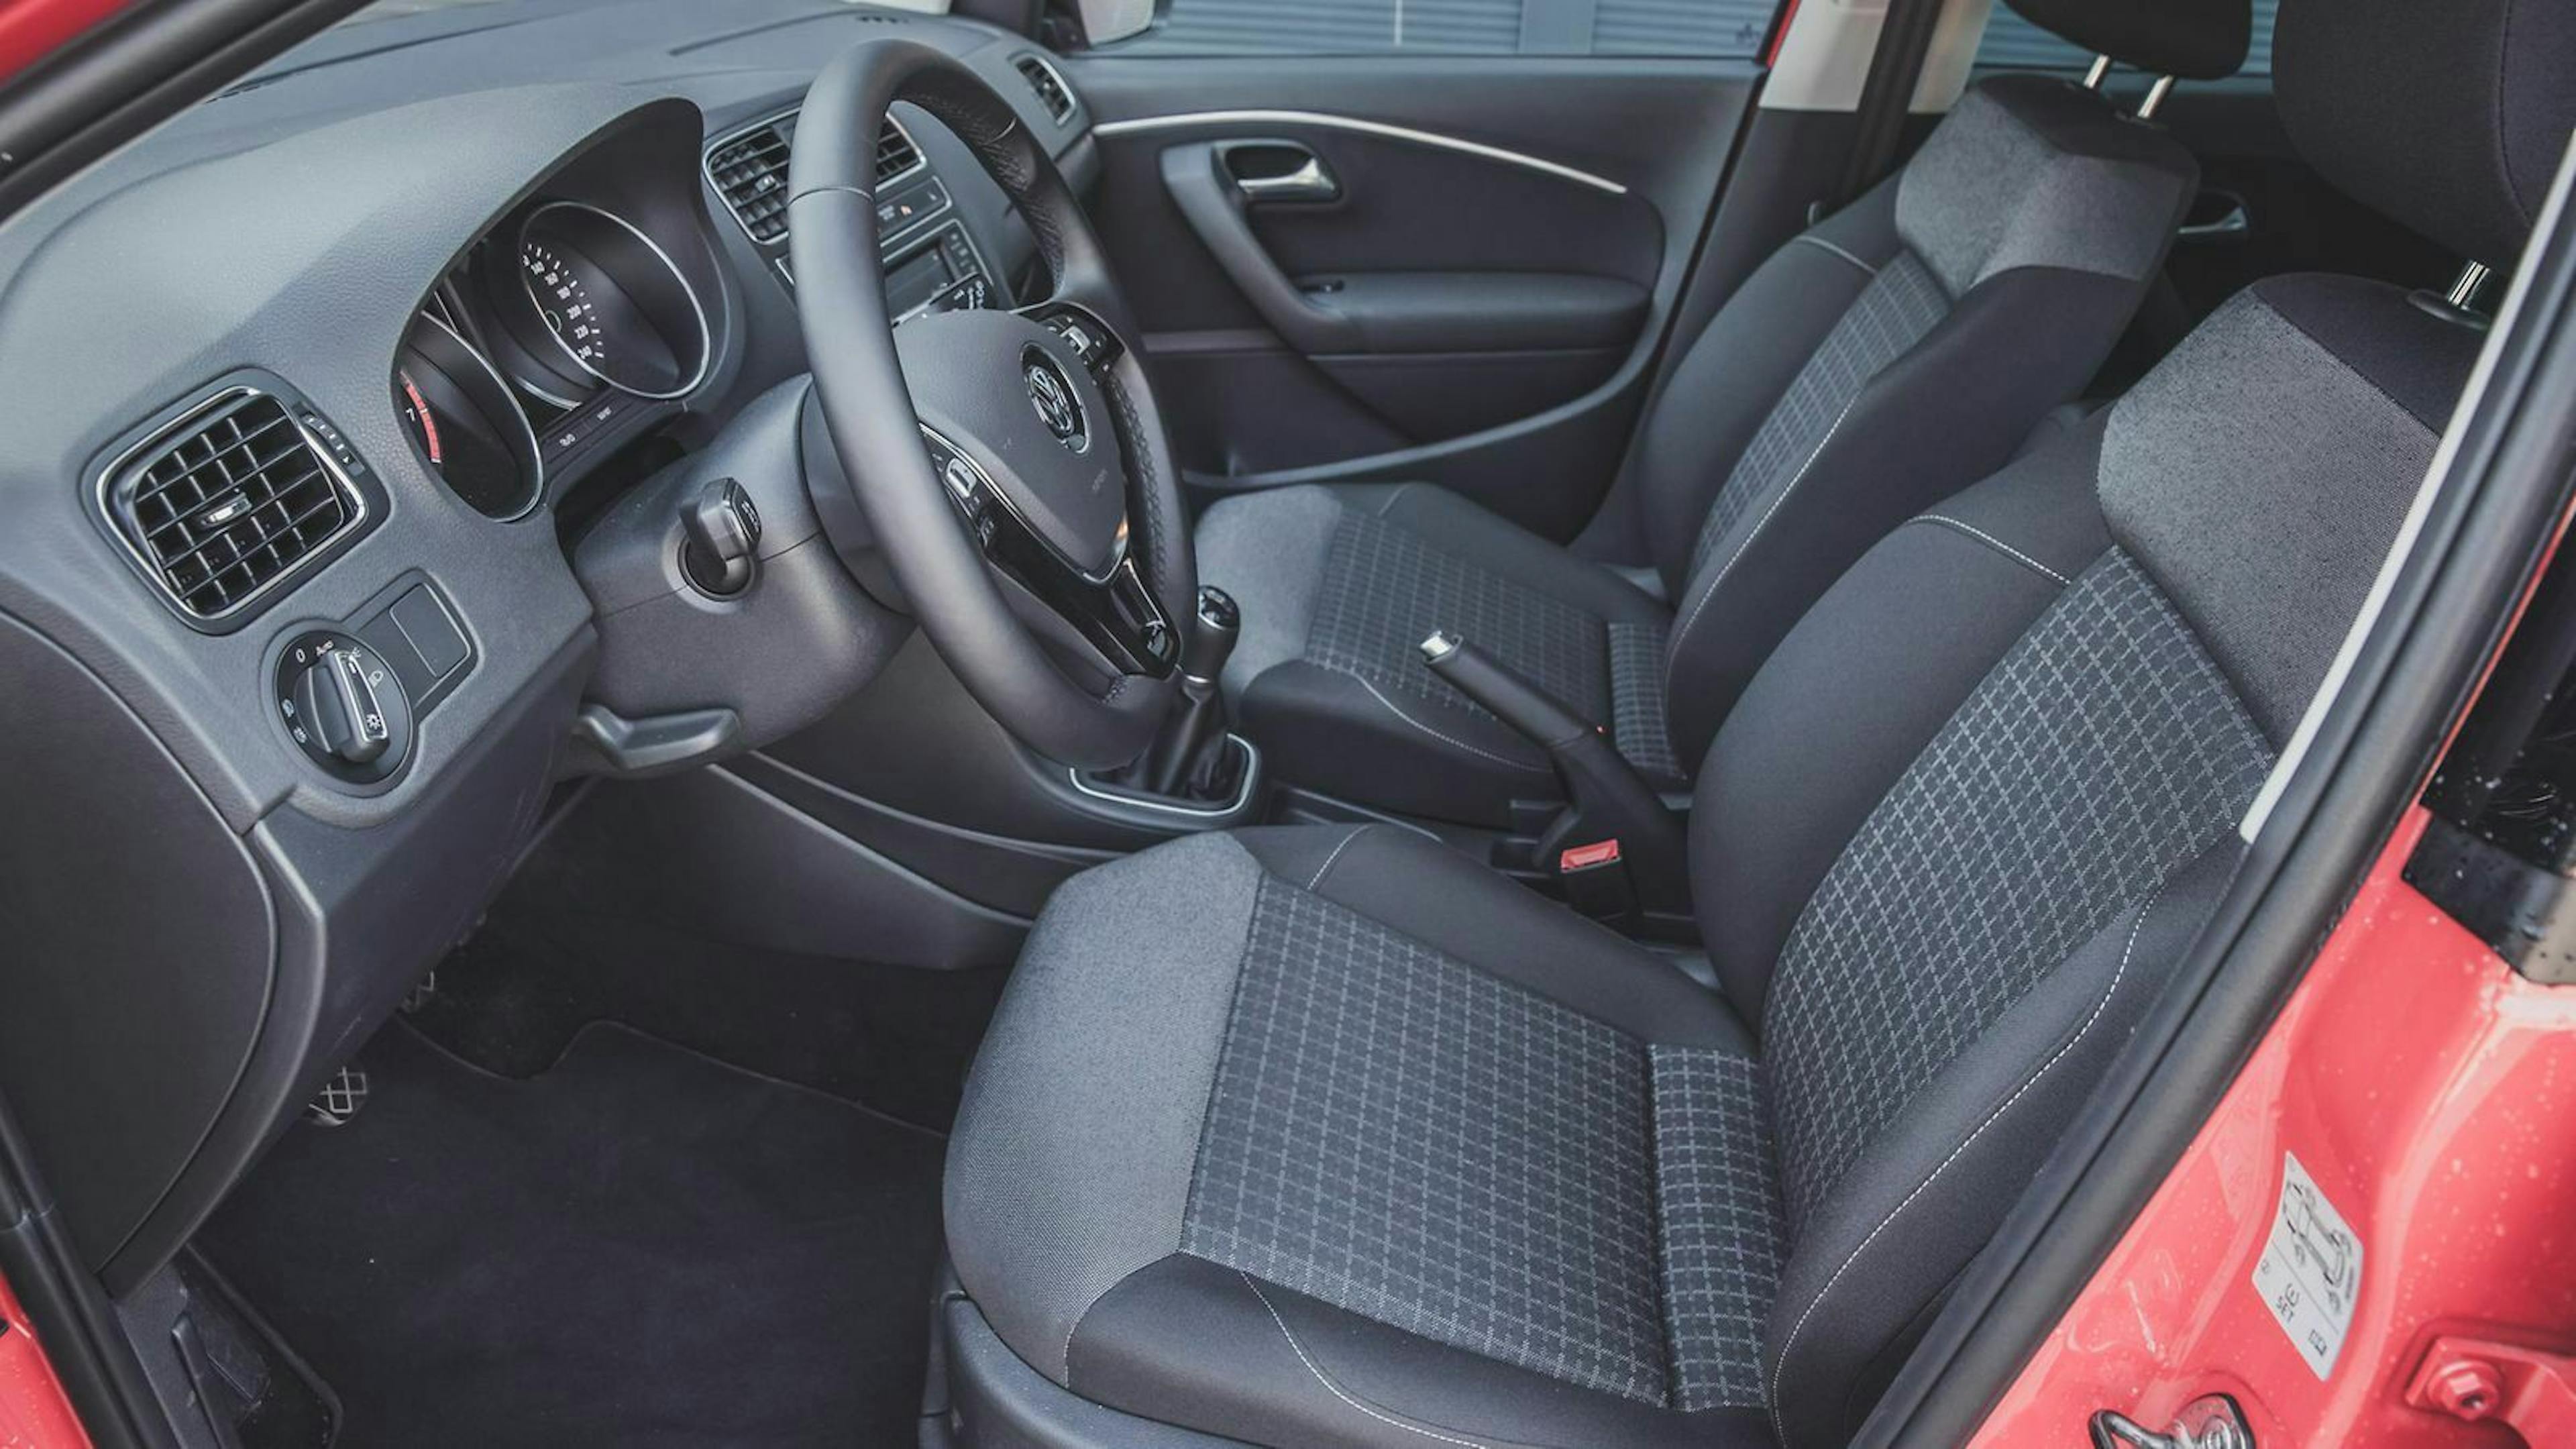 Auch VW bietet Komfortsitze für den Polo an. Im Corsa sitzt man aber bequemer